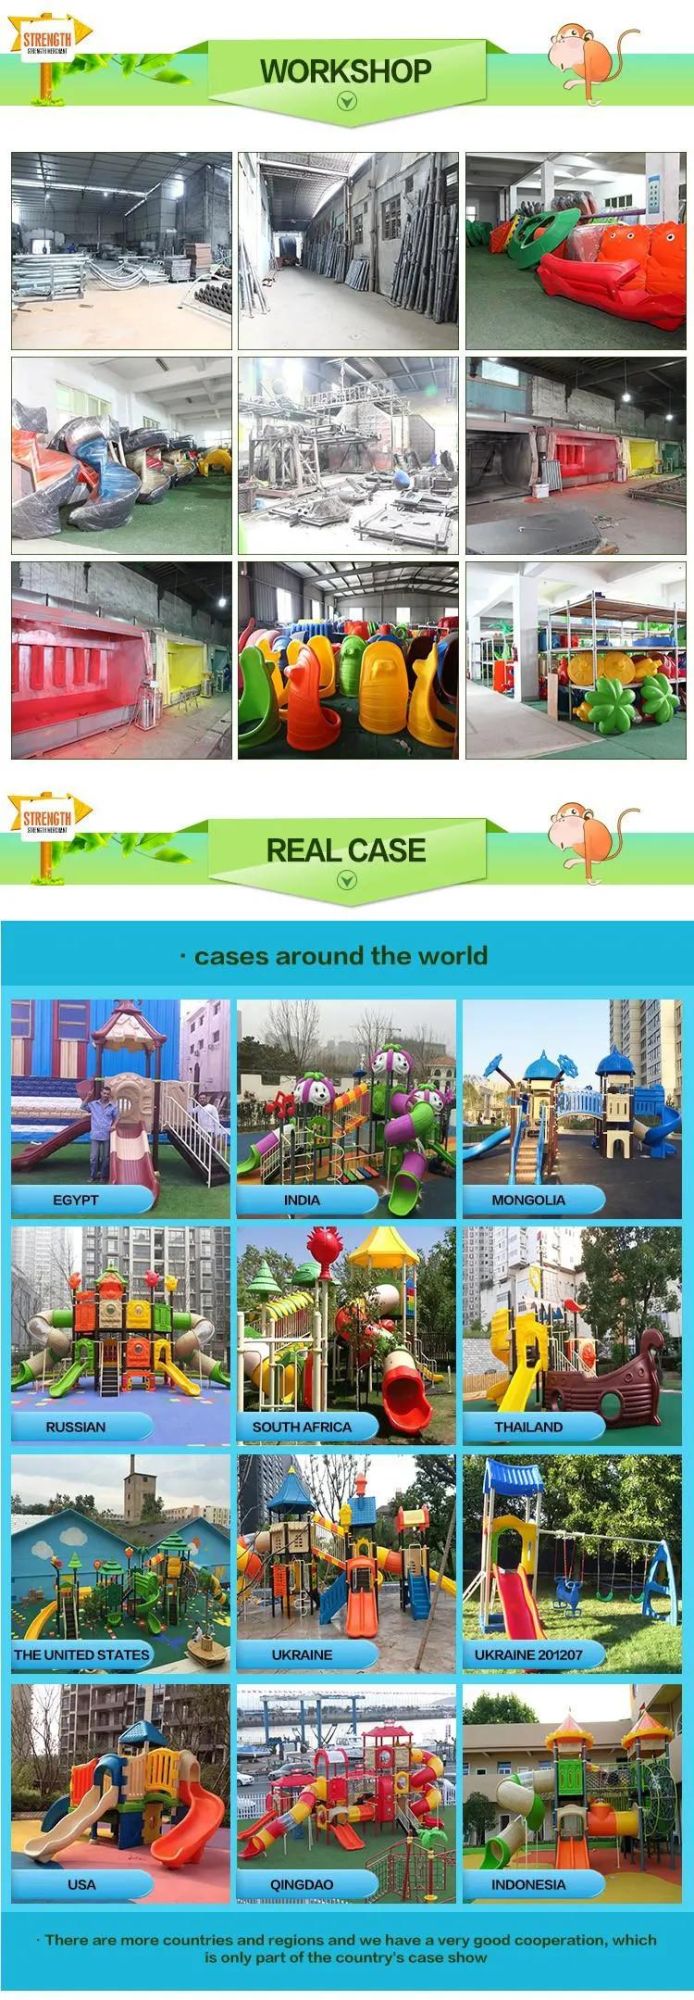 Hot Sale Indoor Playground Equipment for Child Development Center